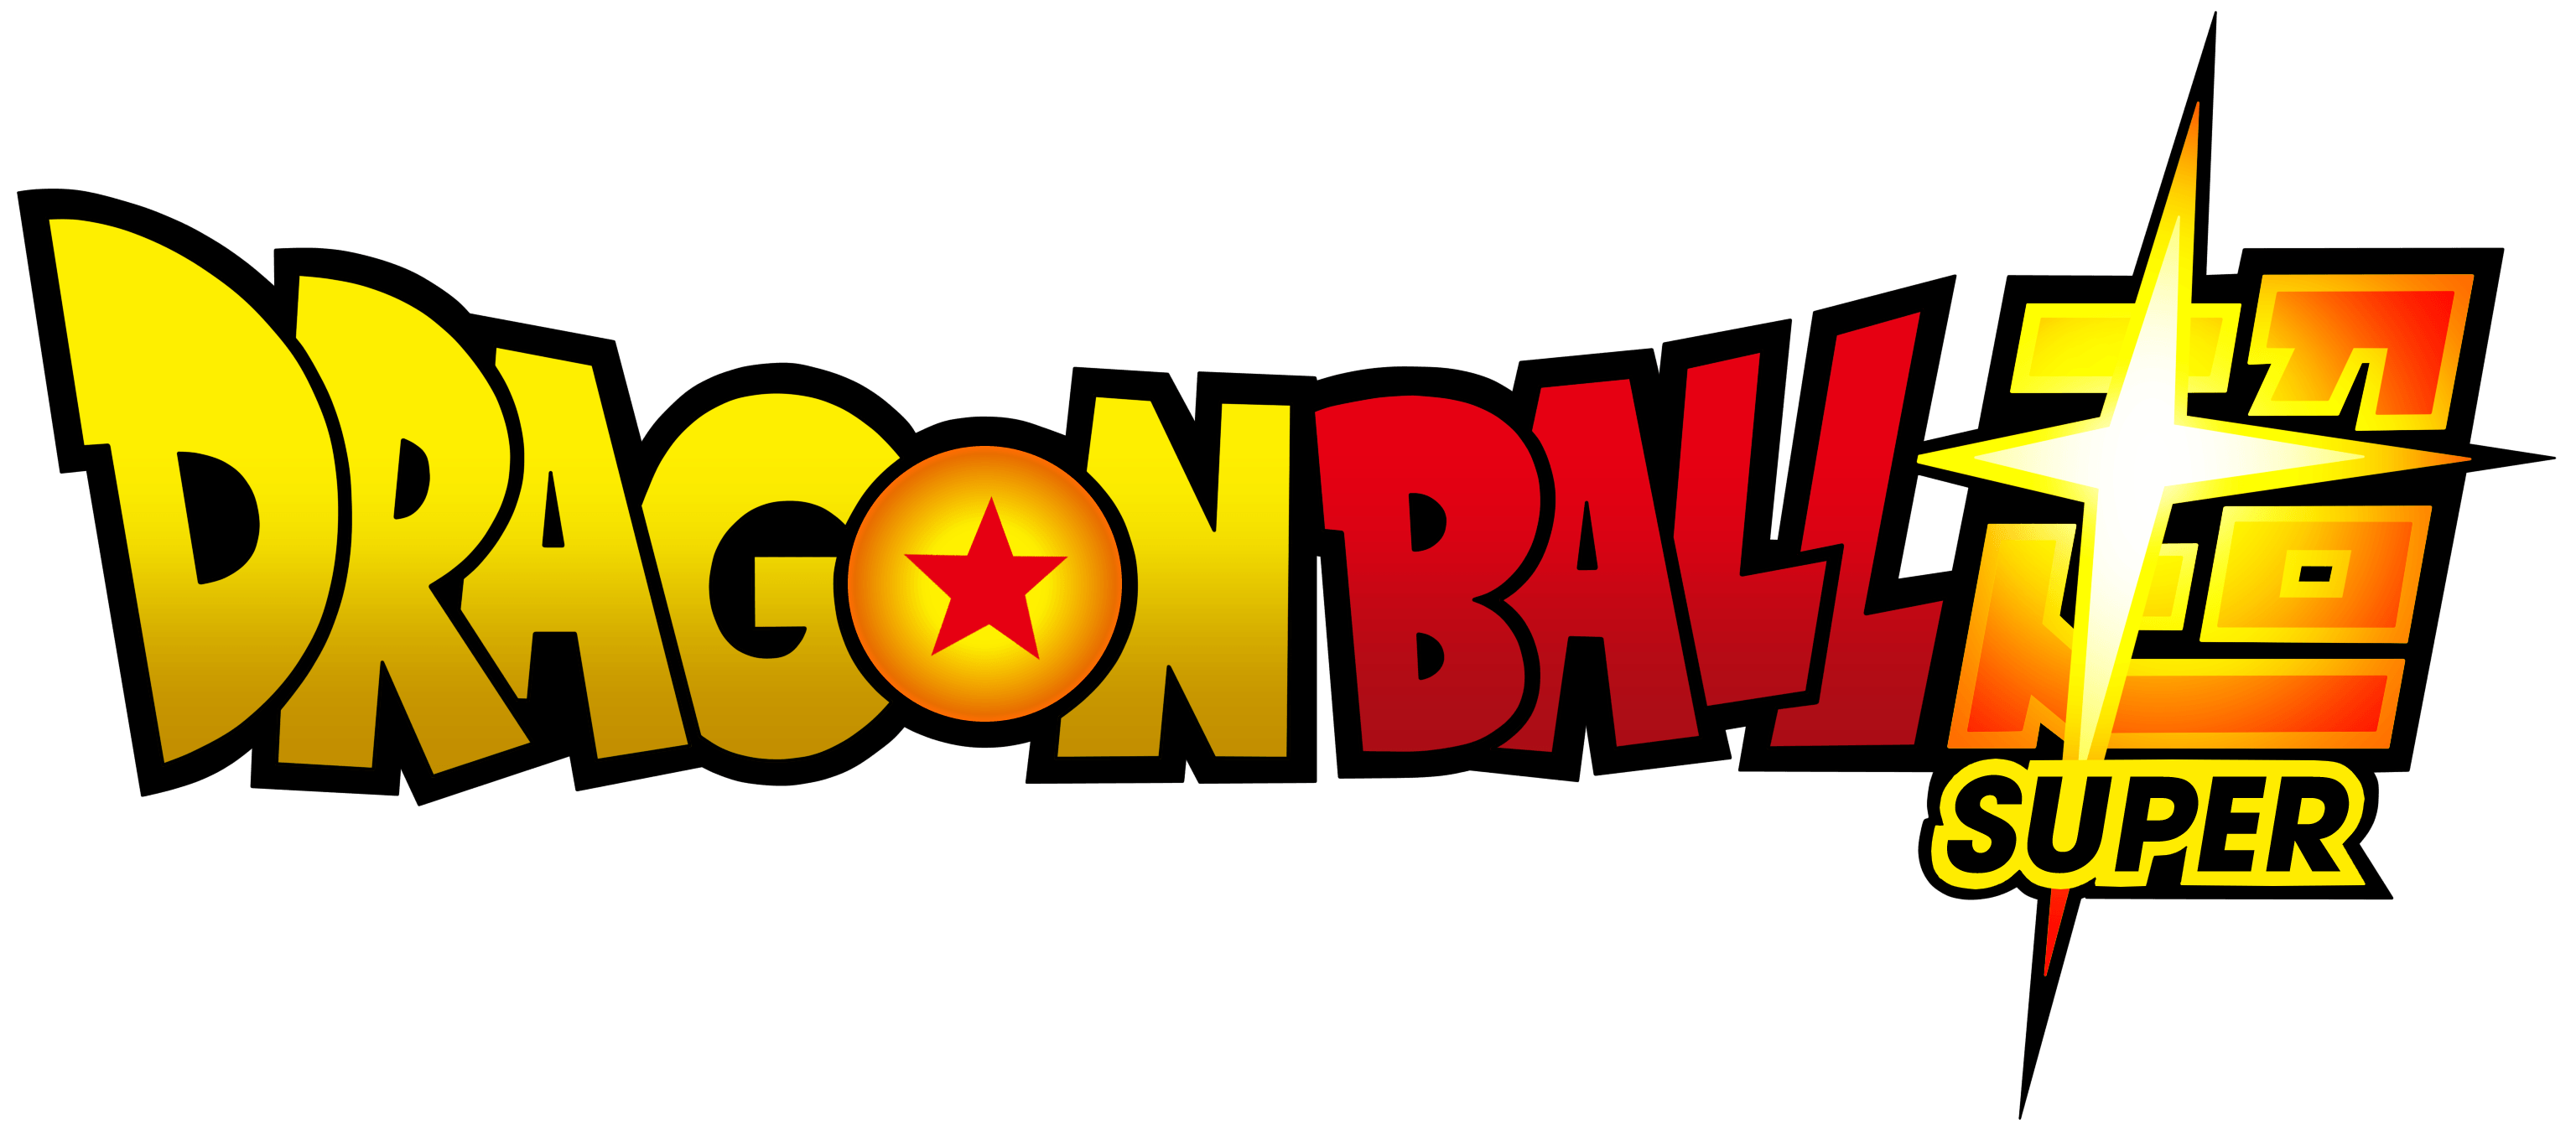 Dragon Ball Super Logo - Dragon ball super Logos